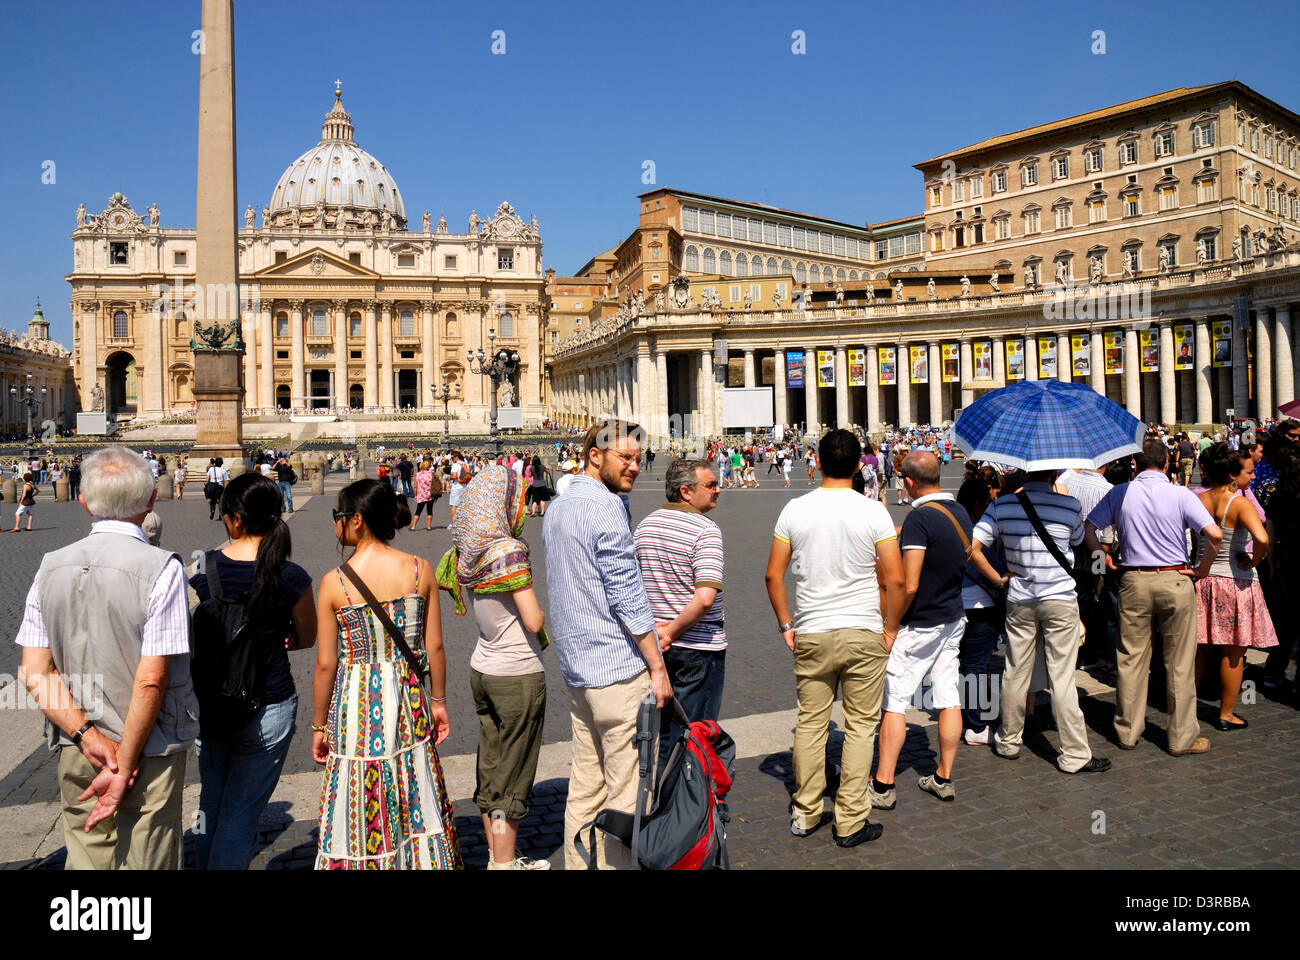 Une grande foule l'attente pour visiter les Musées du Vatican, le 18 juin 2011 à Rome, Italie Banque D'Images